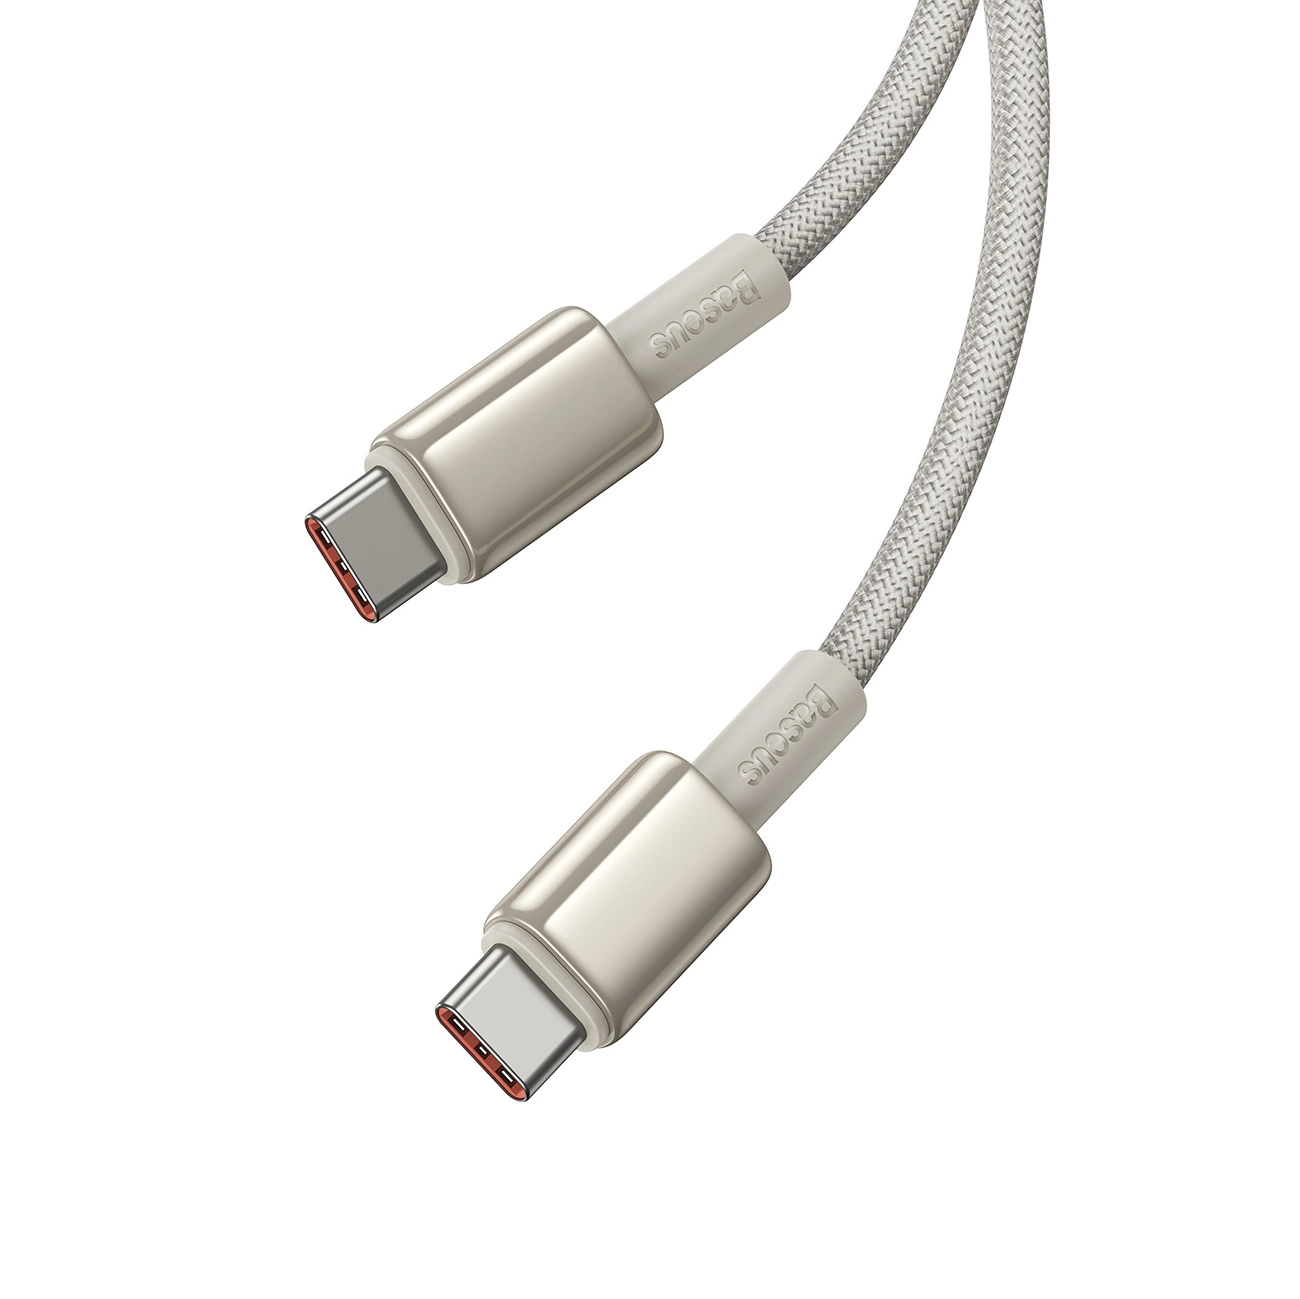 Baseus Tungsten Gold-Kabel mit USB-C/USB-C-Anschlüssen mit einer Leistung von bis zu 100 W und einer Länge von 1 m auf weißem Hintergrund